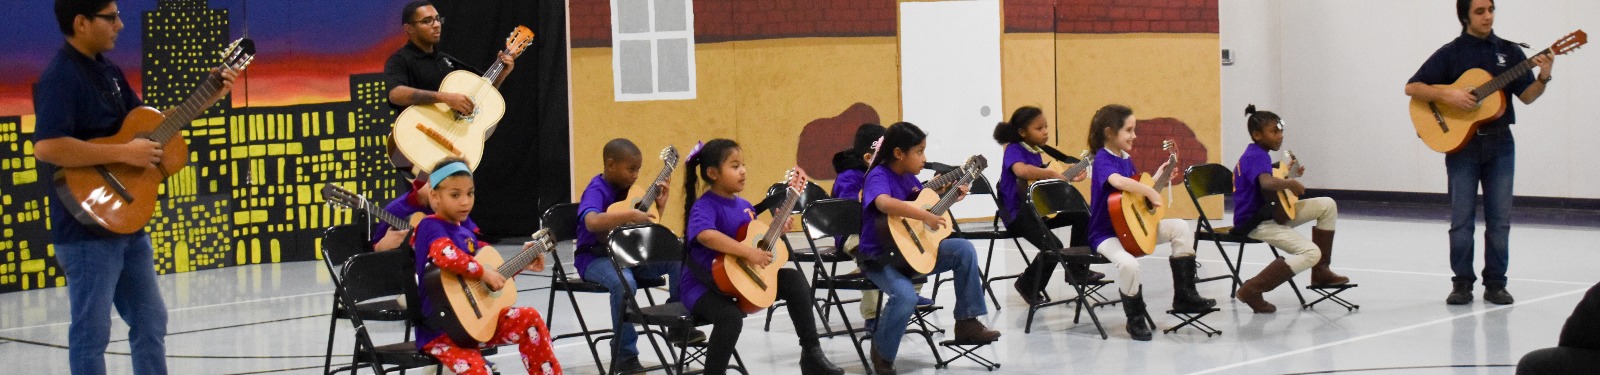 Students play guitar at a recital